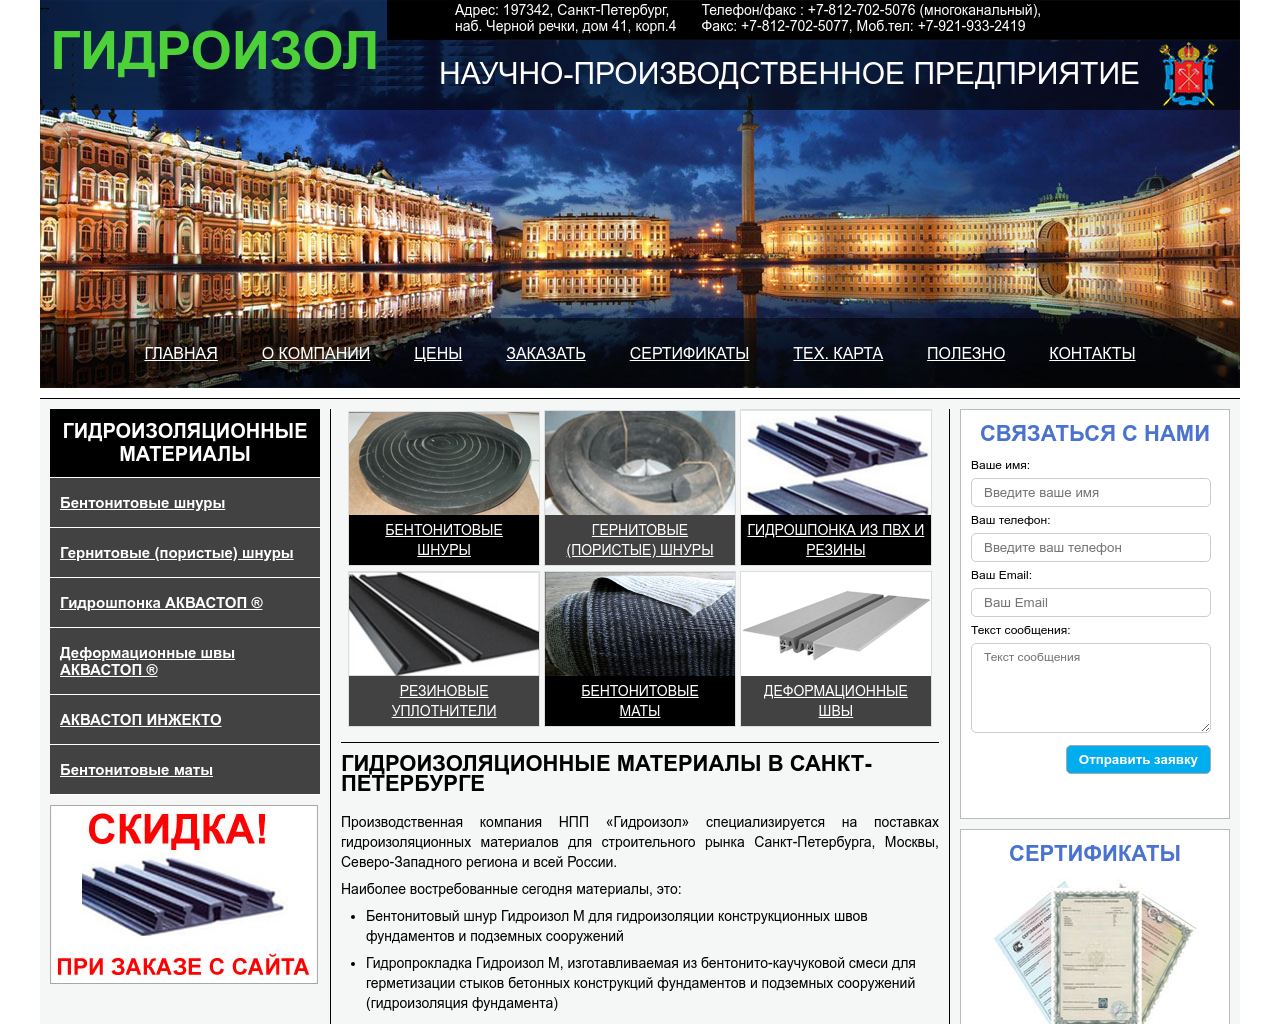 Изображение сайта npp-gidroizol.ru в разрешении 1280x1024